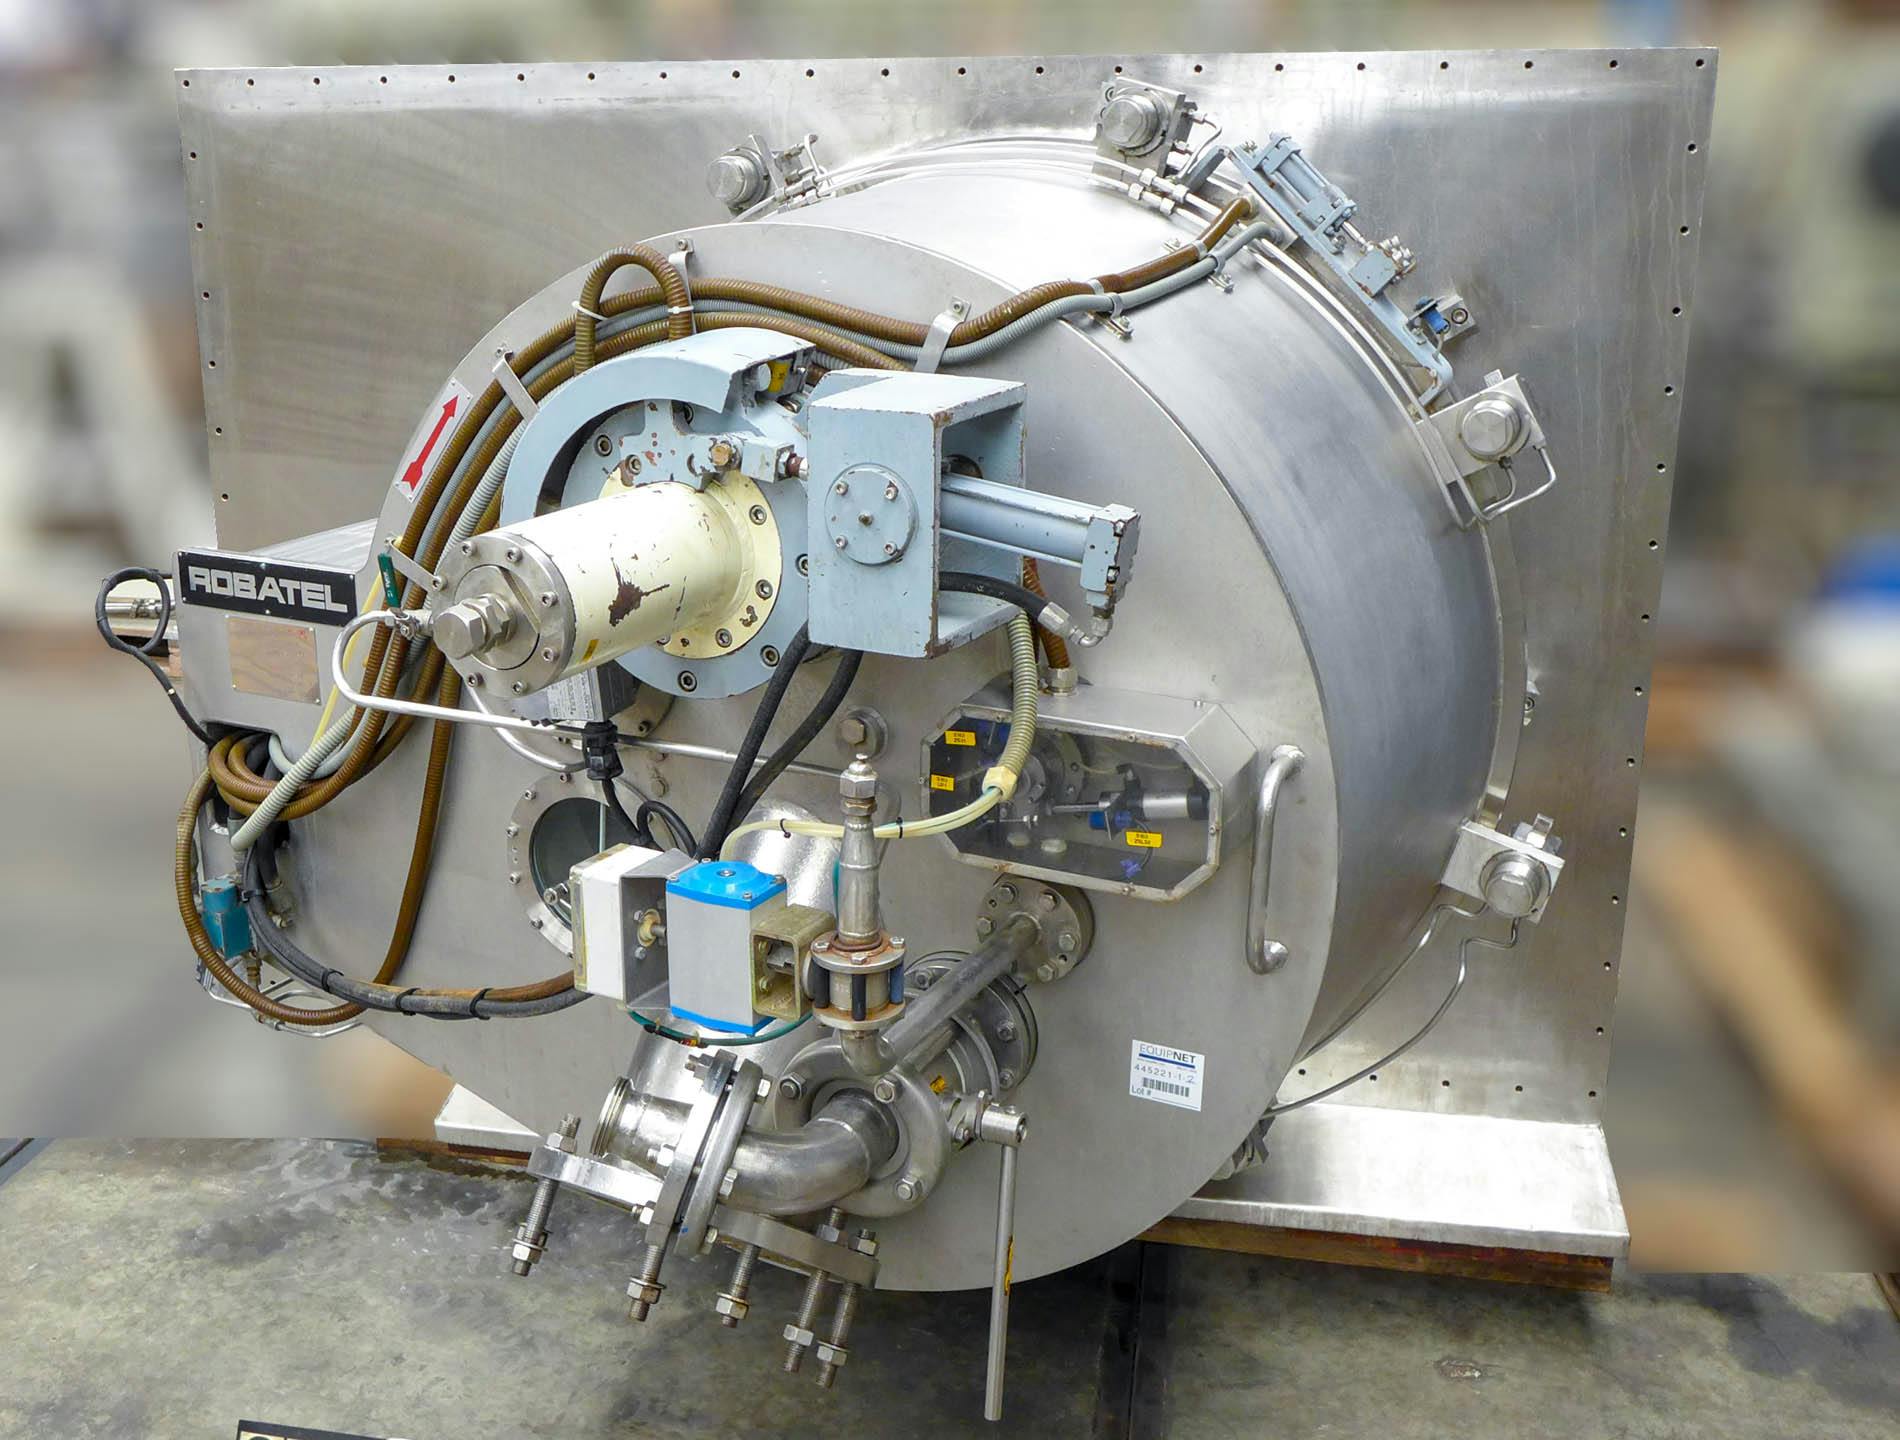 Robatel horizontal peeler centrifuge - Centrífuga peladora - image 3